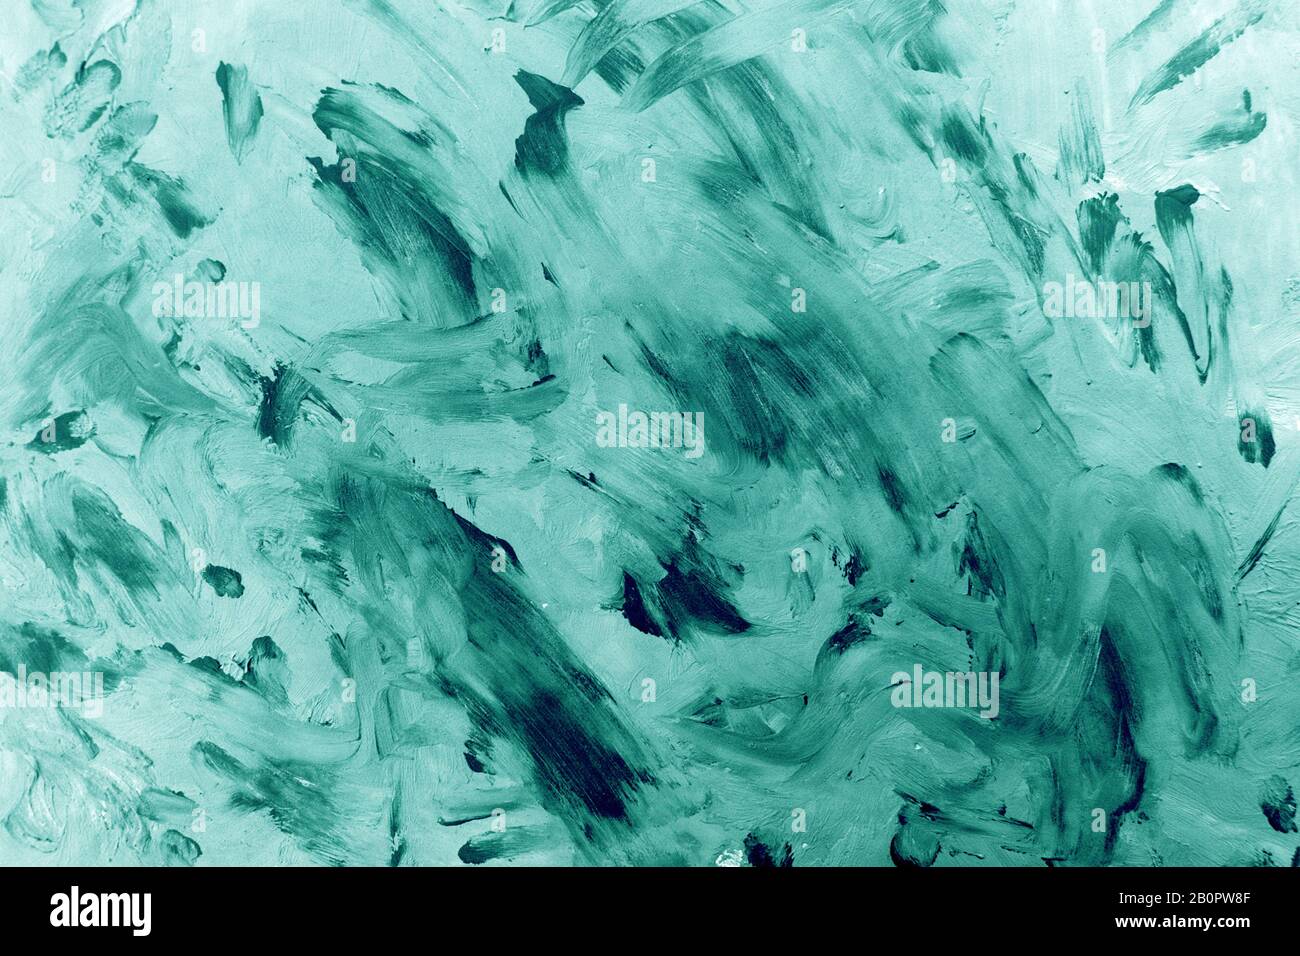 Hintergrund im Grunge-Stil. Smaragdfarbene Textur der Pinselstriche an der Wand, Leinwand. Stockfoto